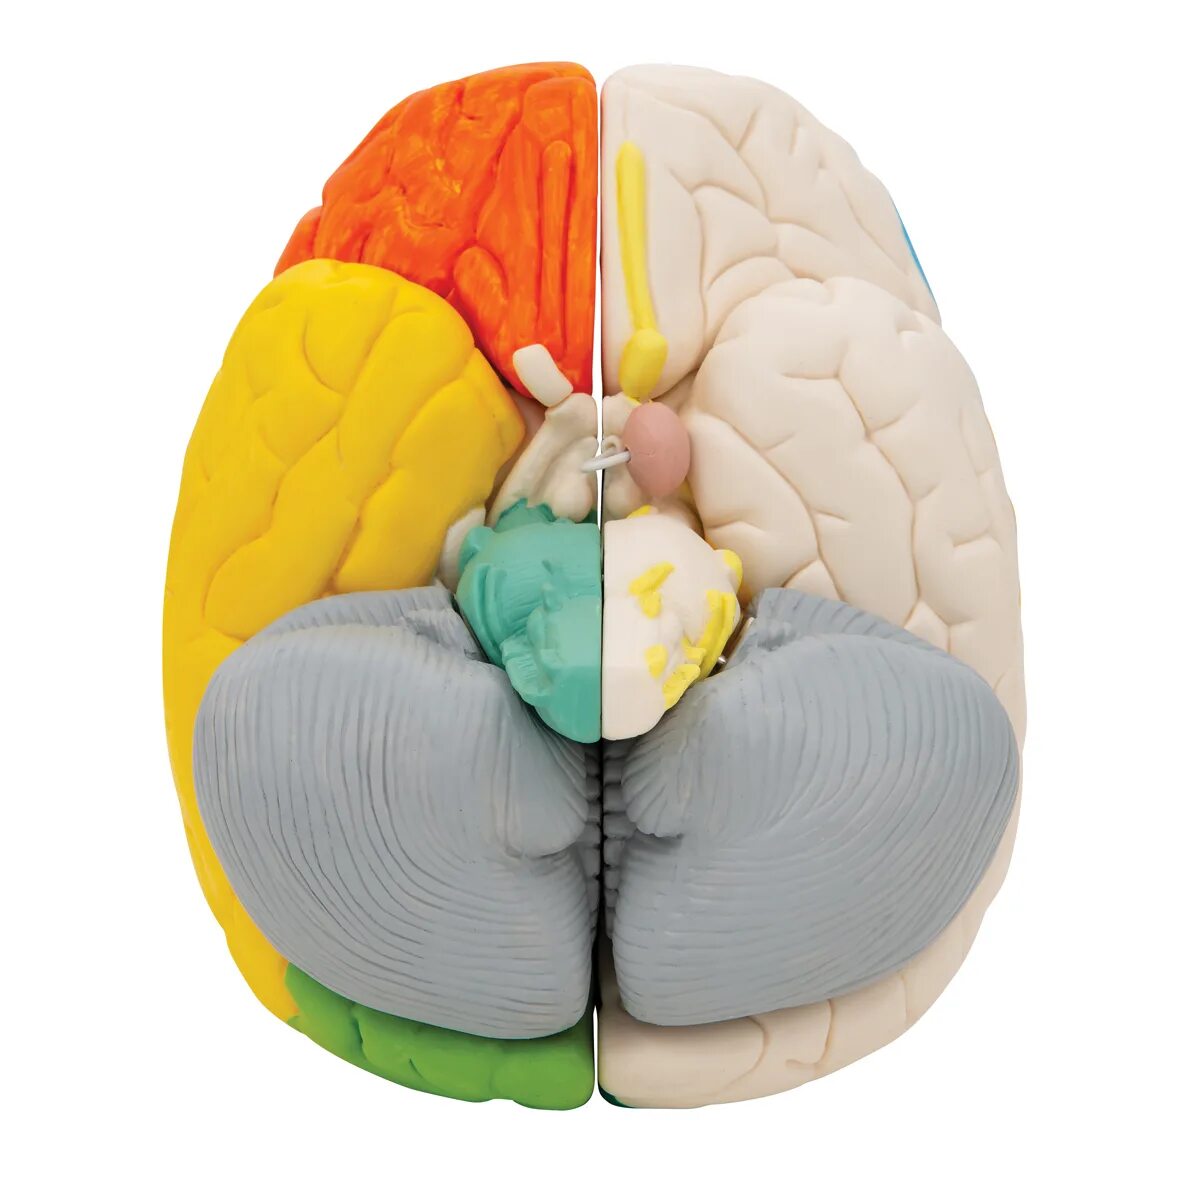 Нейро анатомическая модель мозга. Разборная модель мозга. Ручная модель мозга. Пластиковая модель мозга.